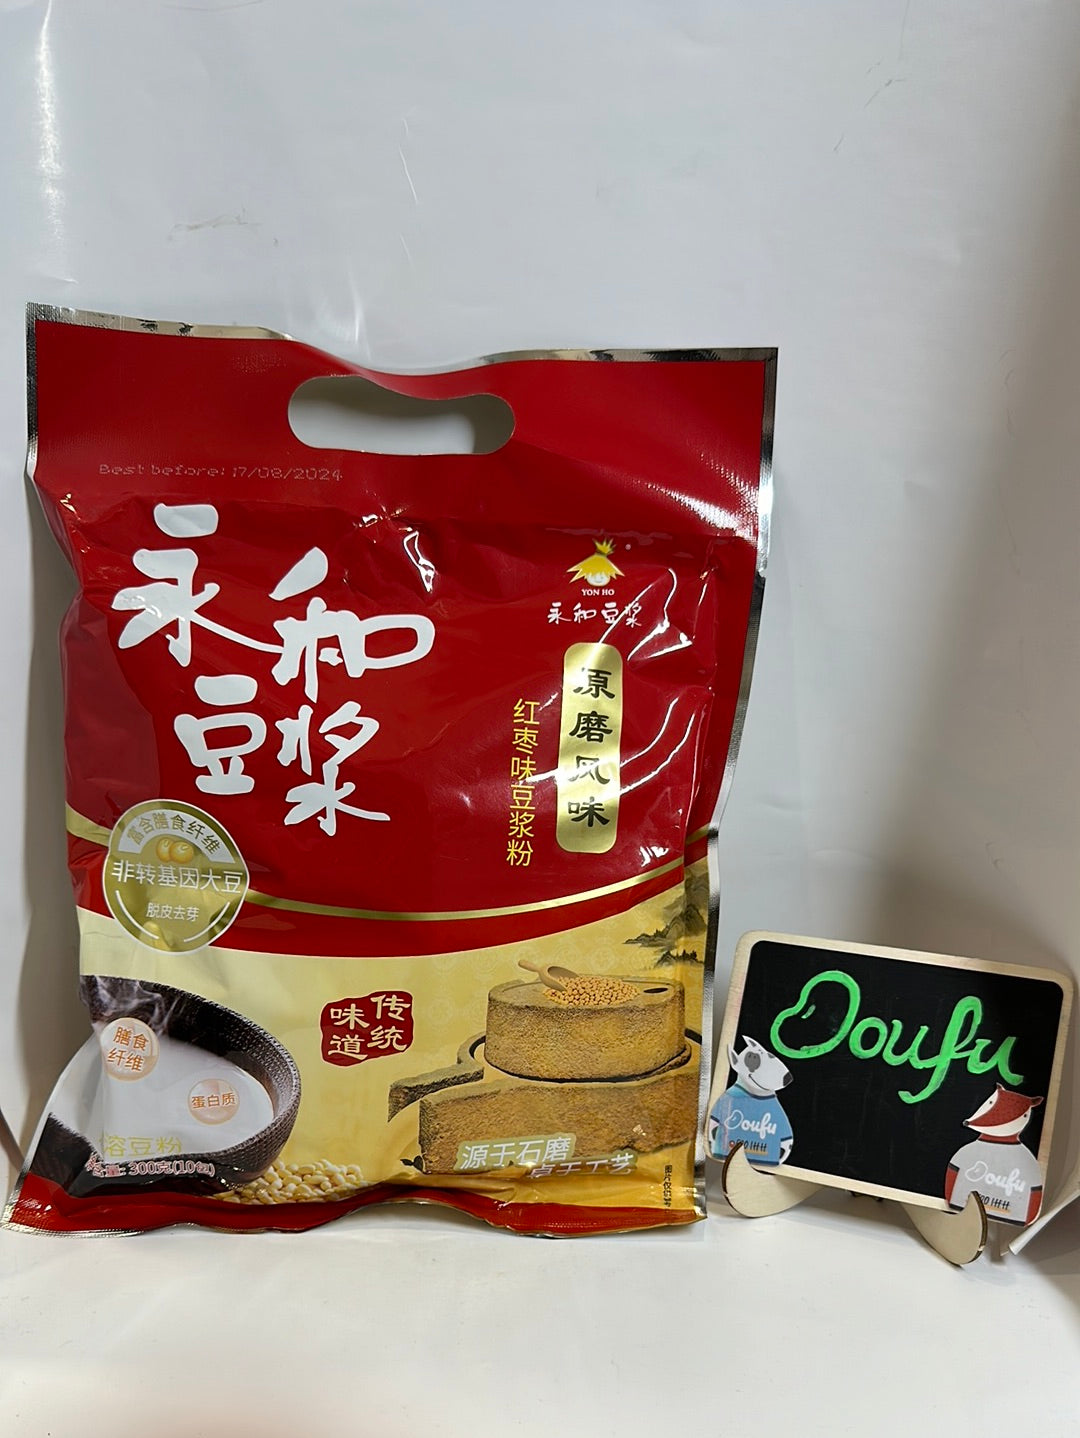 YH Soybean powder-Dates 永和原磨红枣豆浆粉 350g